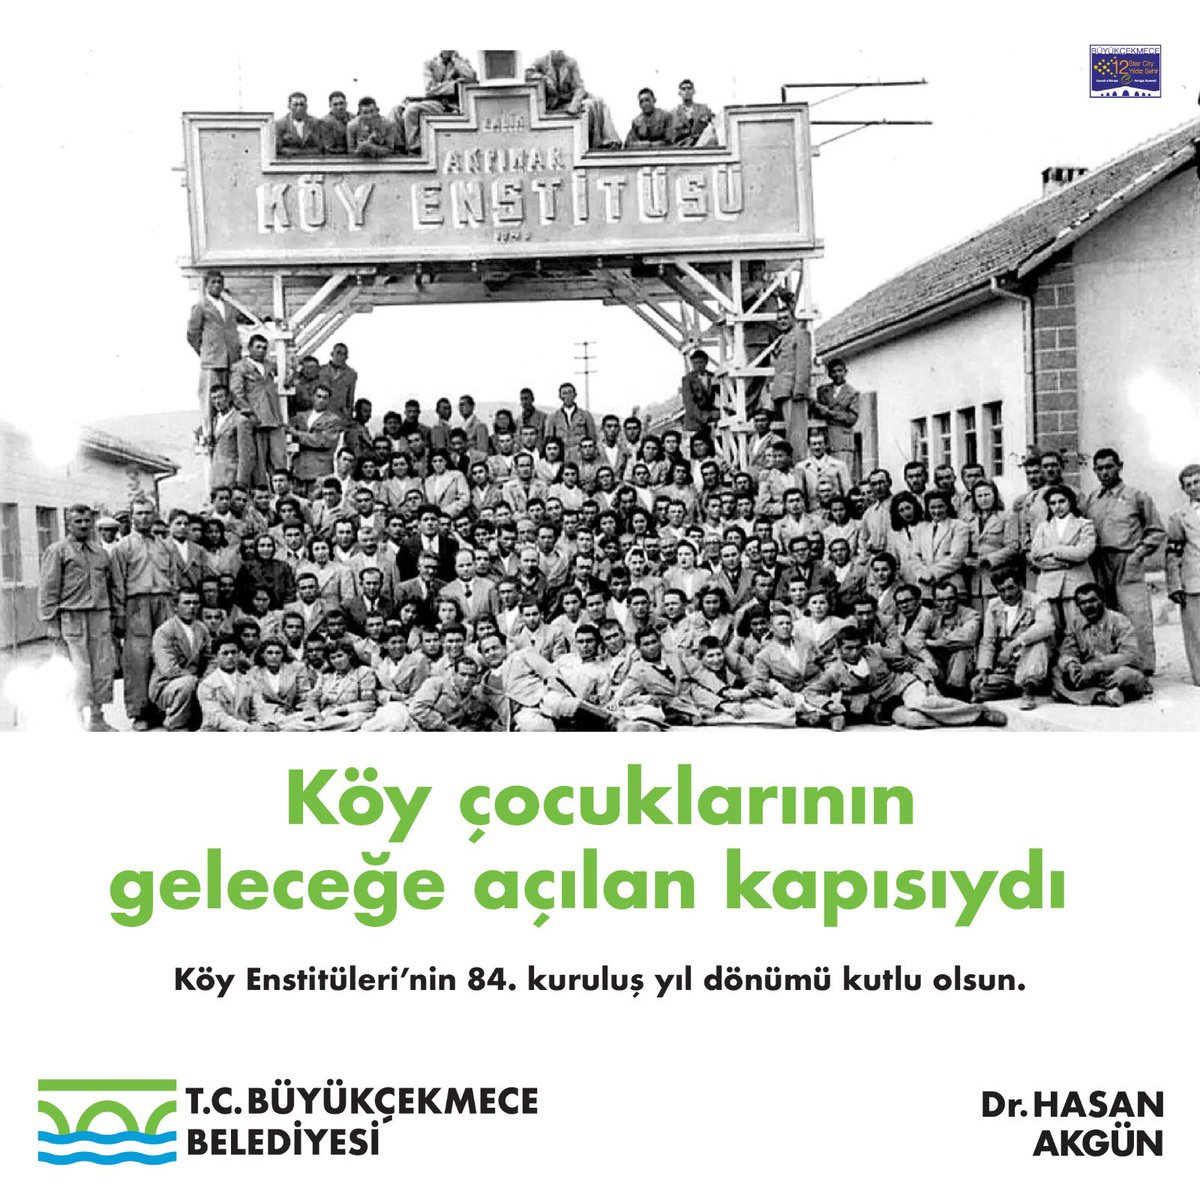 KUL OLMAKTAN YURTTAŞ OLMAYA GEÇİŞİN ADIDIR KÖY ENSTİTÜLERİ Bilime, sanata, tarıma ve insana değer veren, ülkemizin en büyük aydınlanma hareketi olan Köy Enstitüleri’nin 84.kuruluş yıldönümünde, başta Başöğretmenimiz Mustafa Kemal Atatürk’ü, 2. Cumhurbaşkanımız İsmet İnönü’yü,